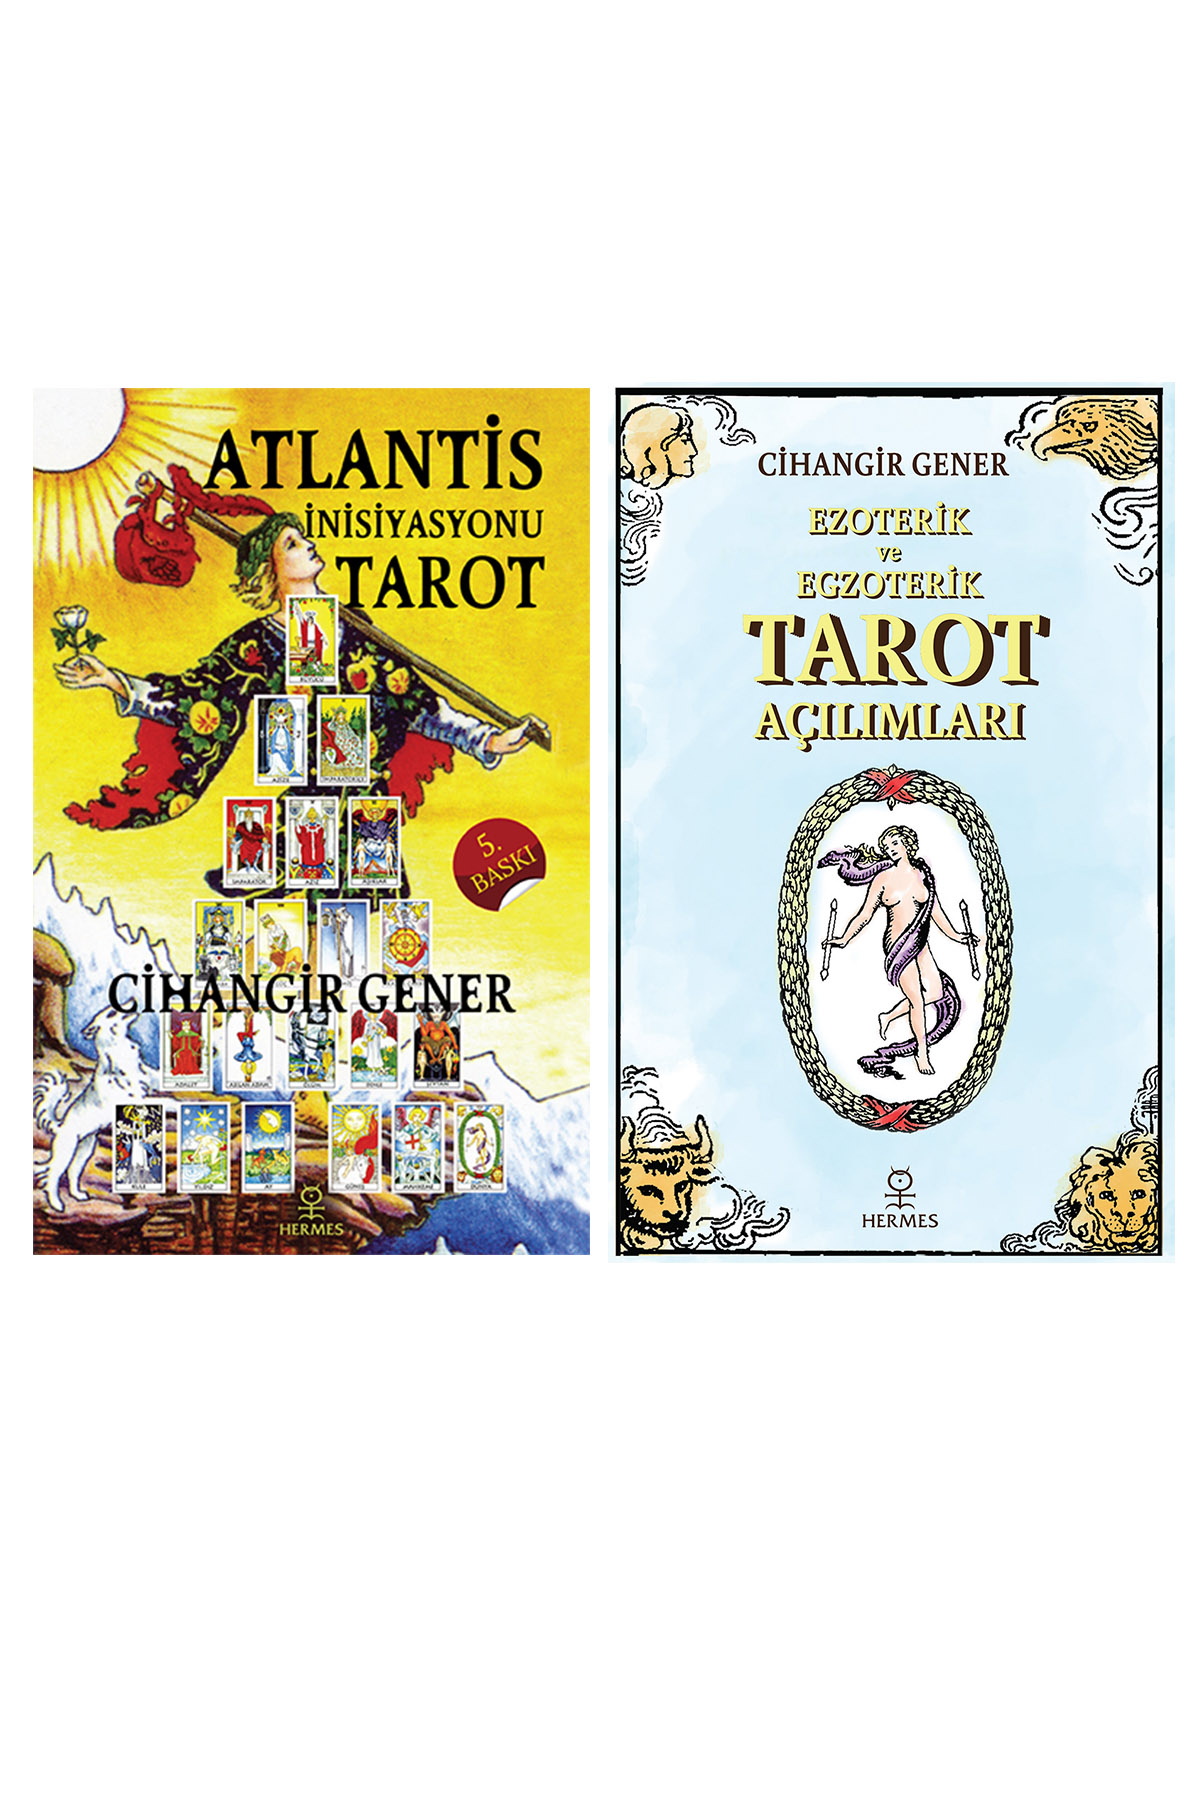 Atlantis İnisiyasyonu Tarot / Ezoterik ve Egzoterik Tarot Açılımları – Cihangir Gener (2 KİTAP SET)